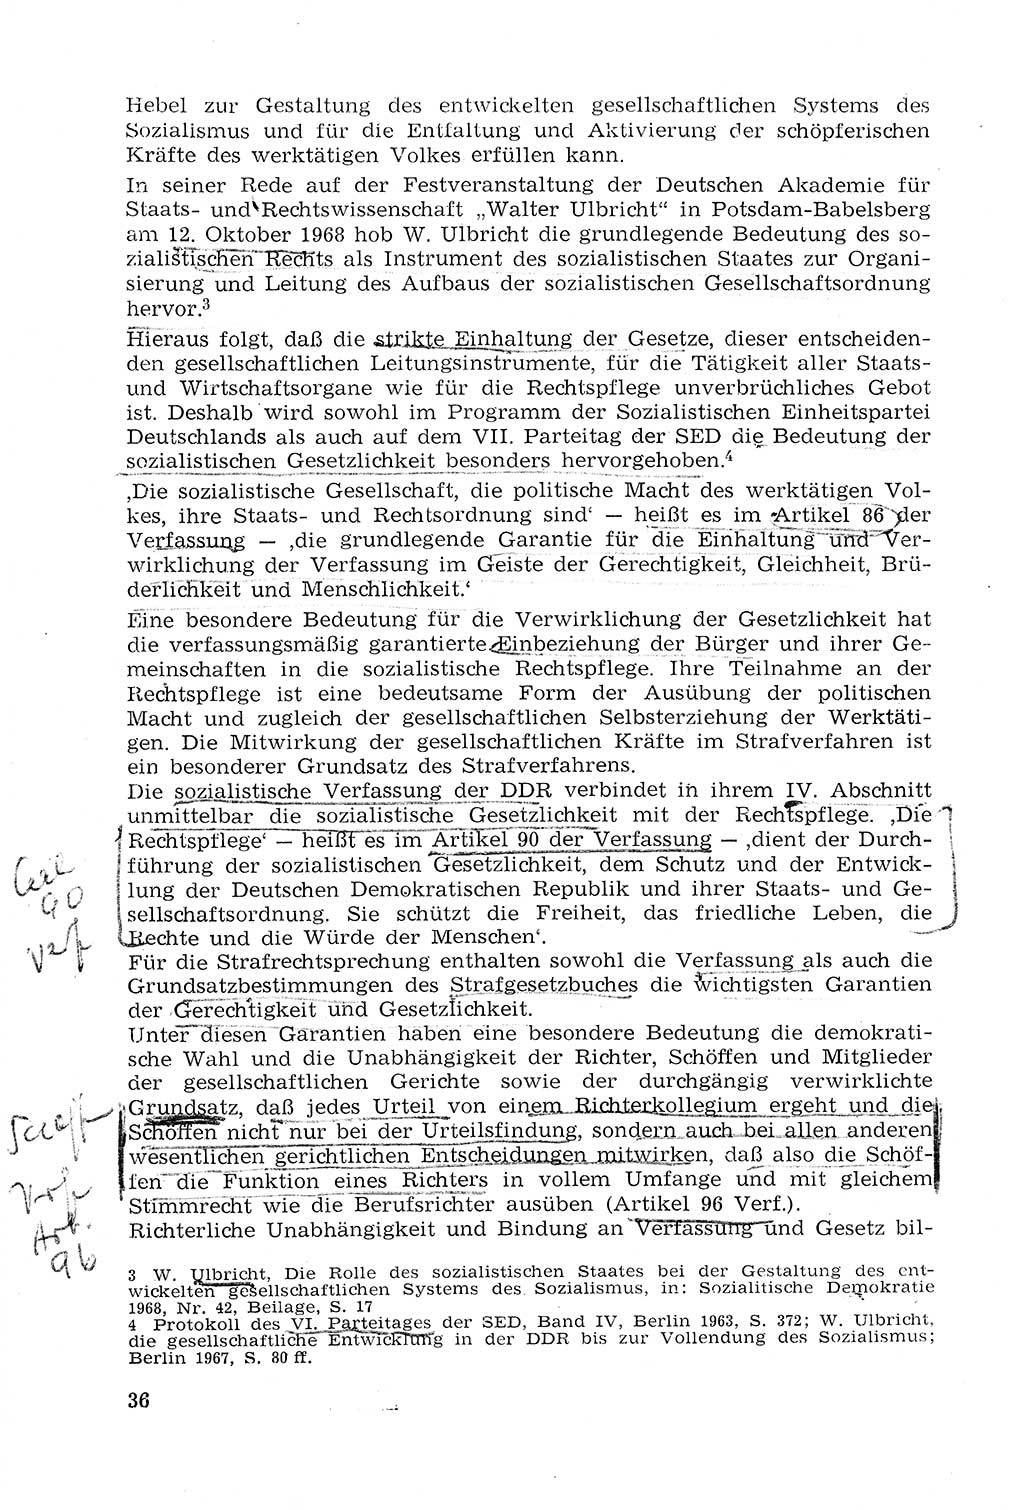 Strafprozeßrecht der DDR (Deutsche Demokratische Republik), Lehrmaterial 1969, Seite 36 (Strafprozeßr. DDR Lehrmat. 1969, S. 36)